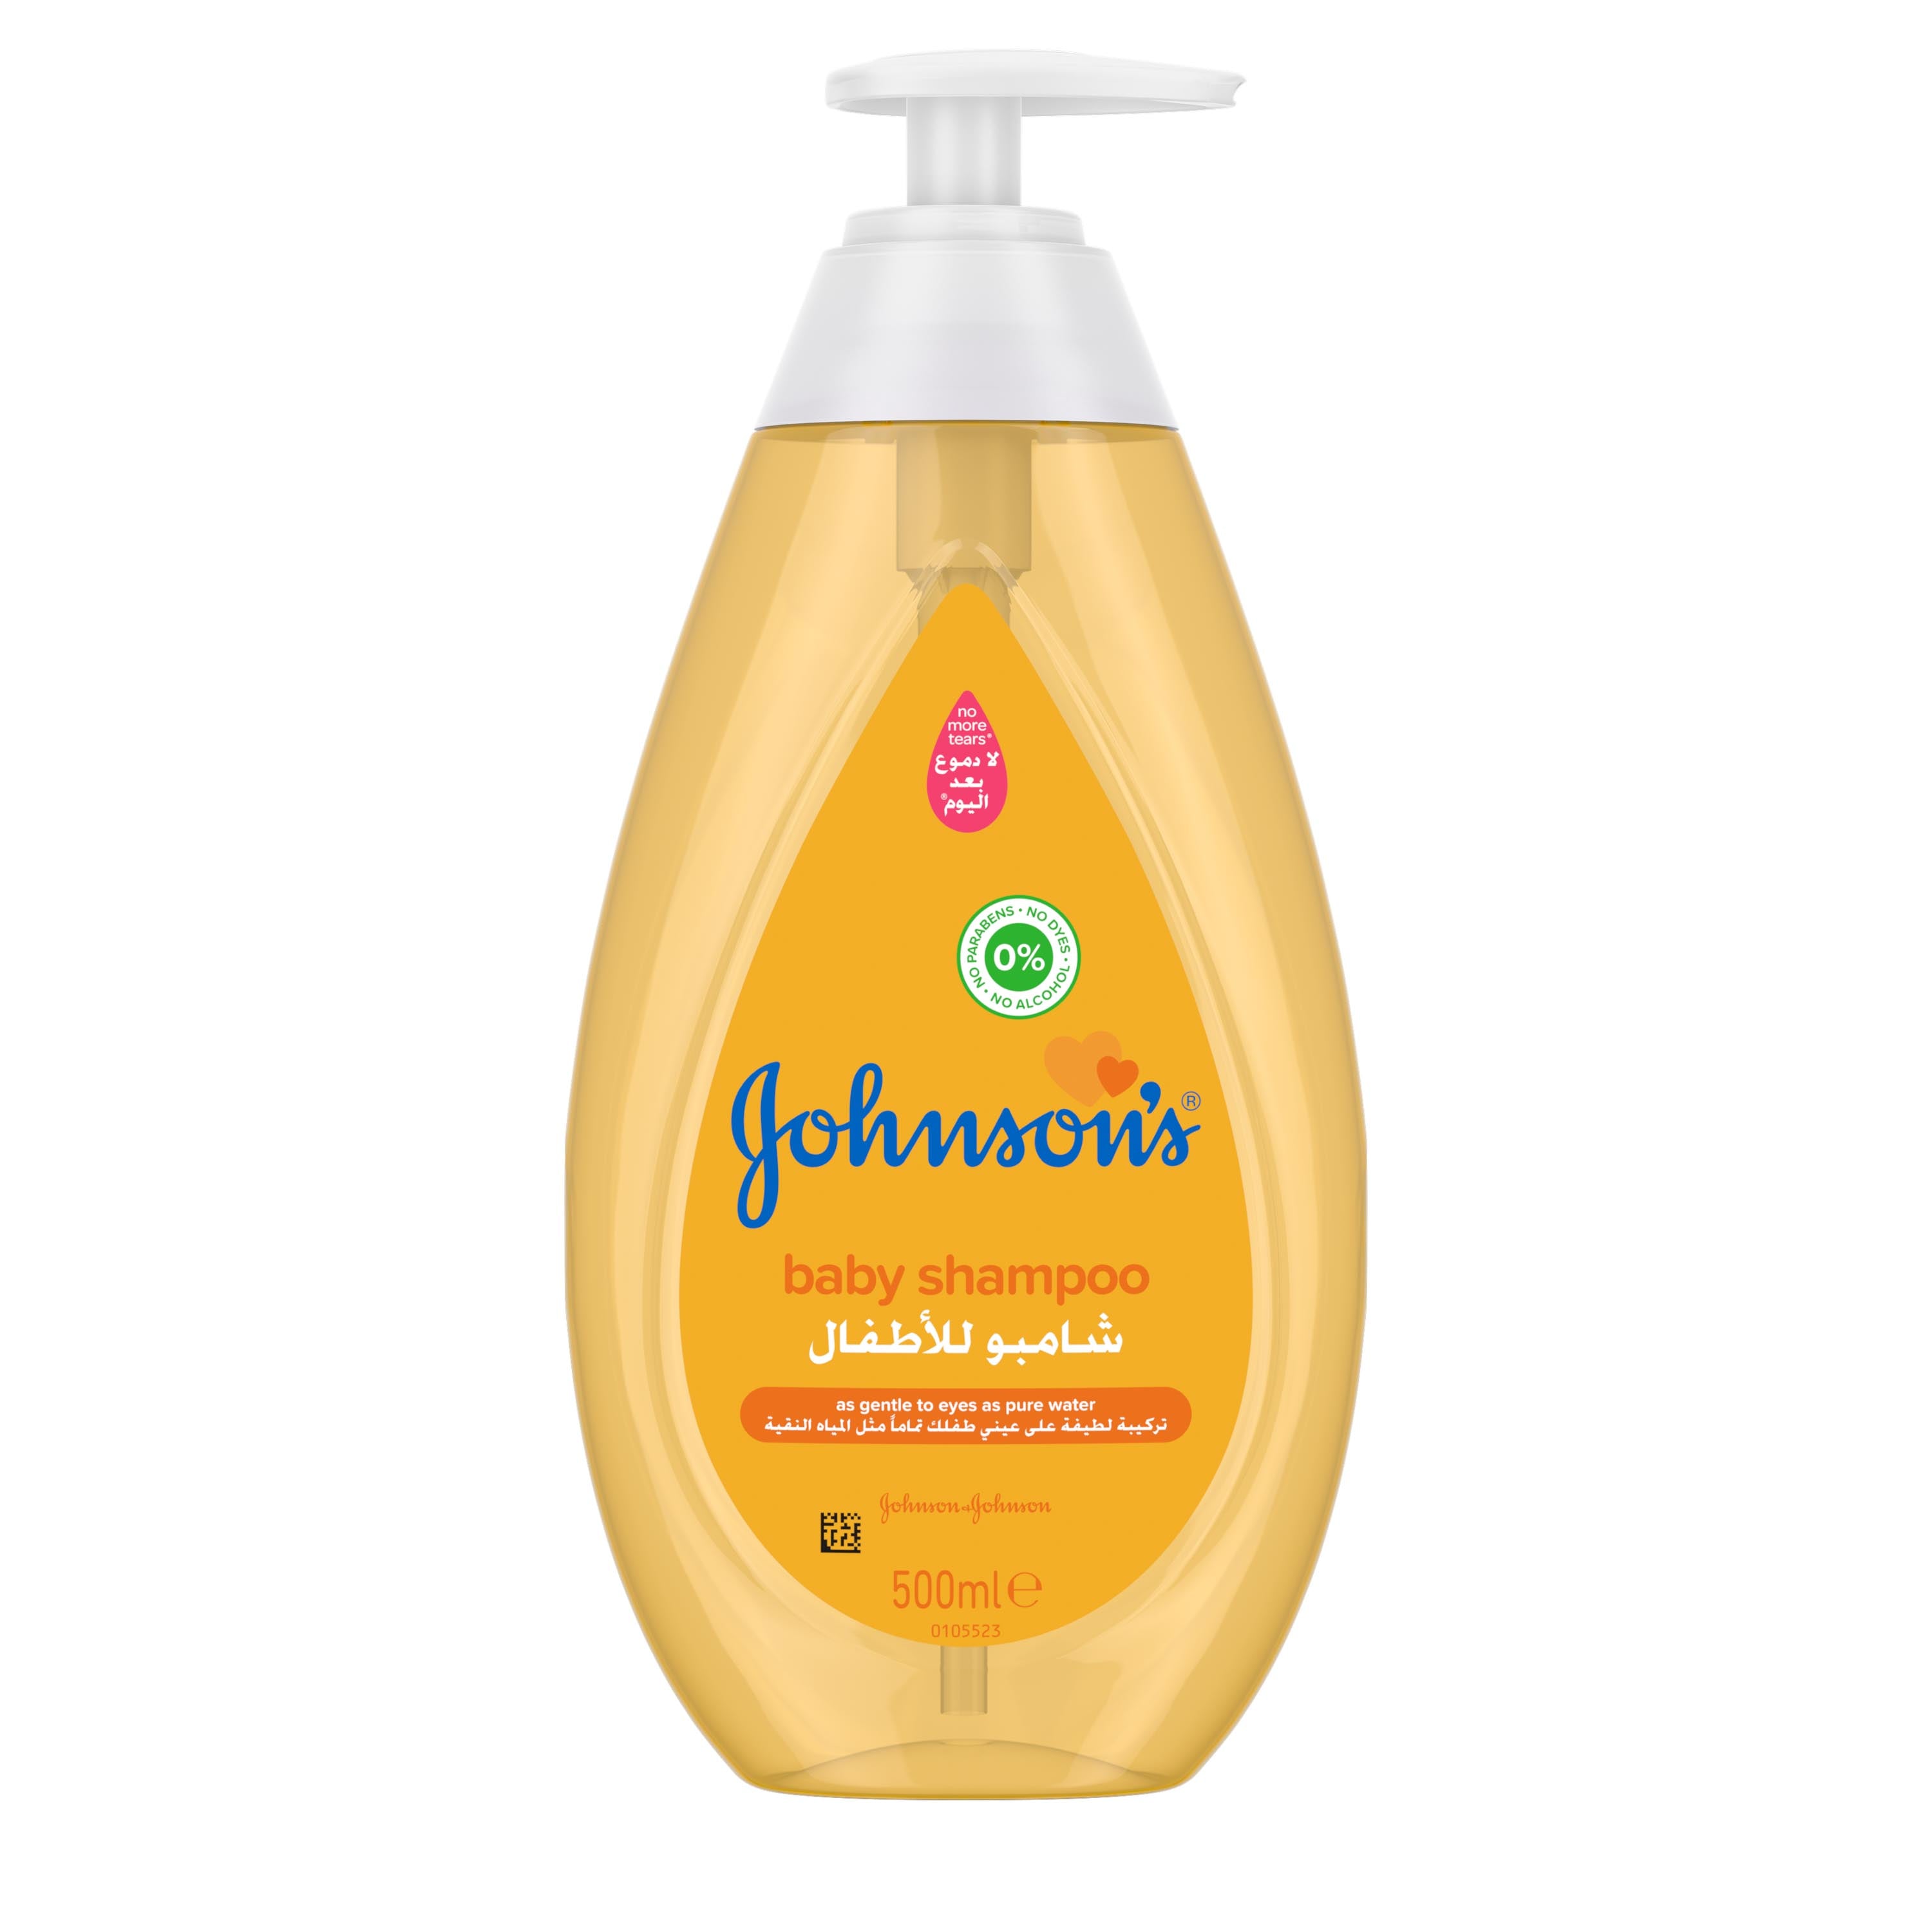 Johnson's Gold shampoo – Junior Egypt